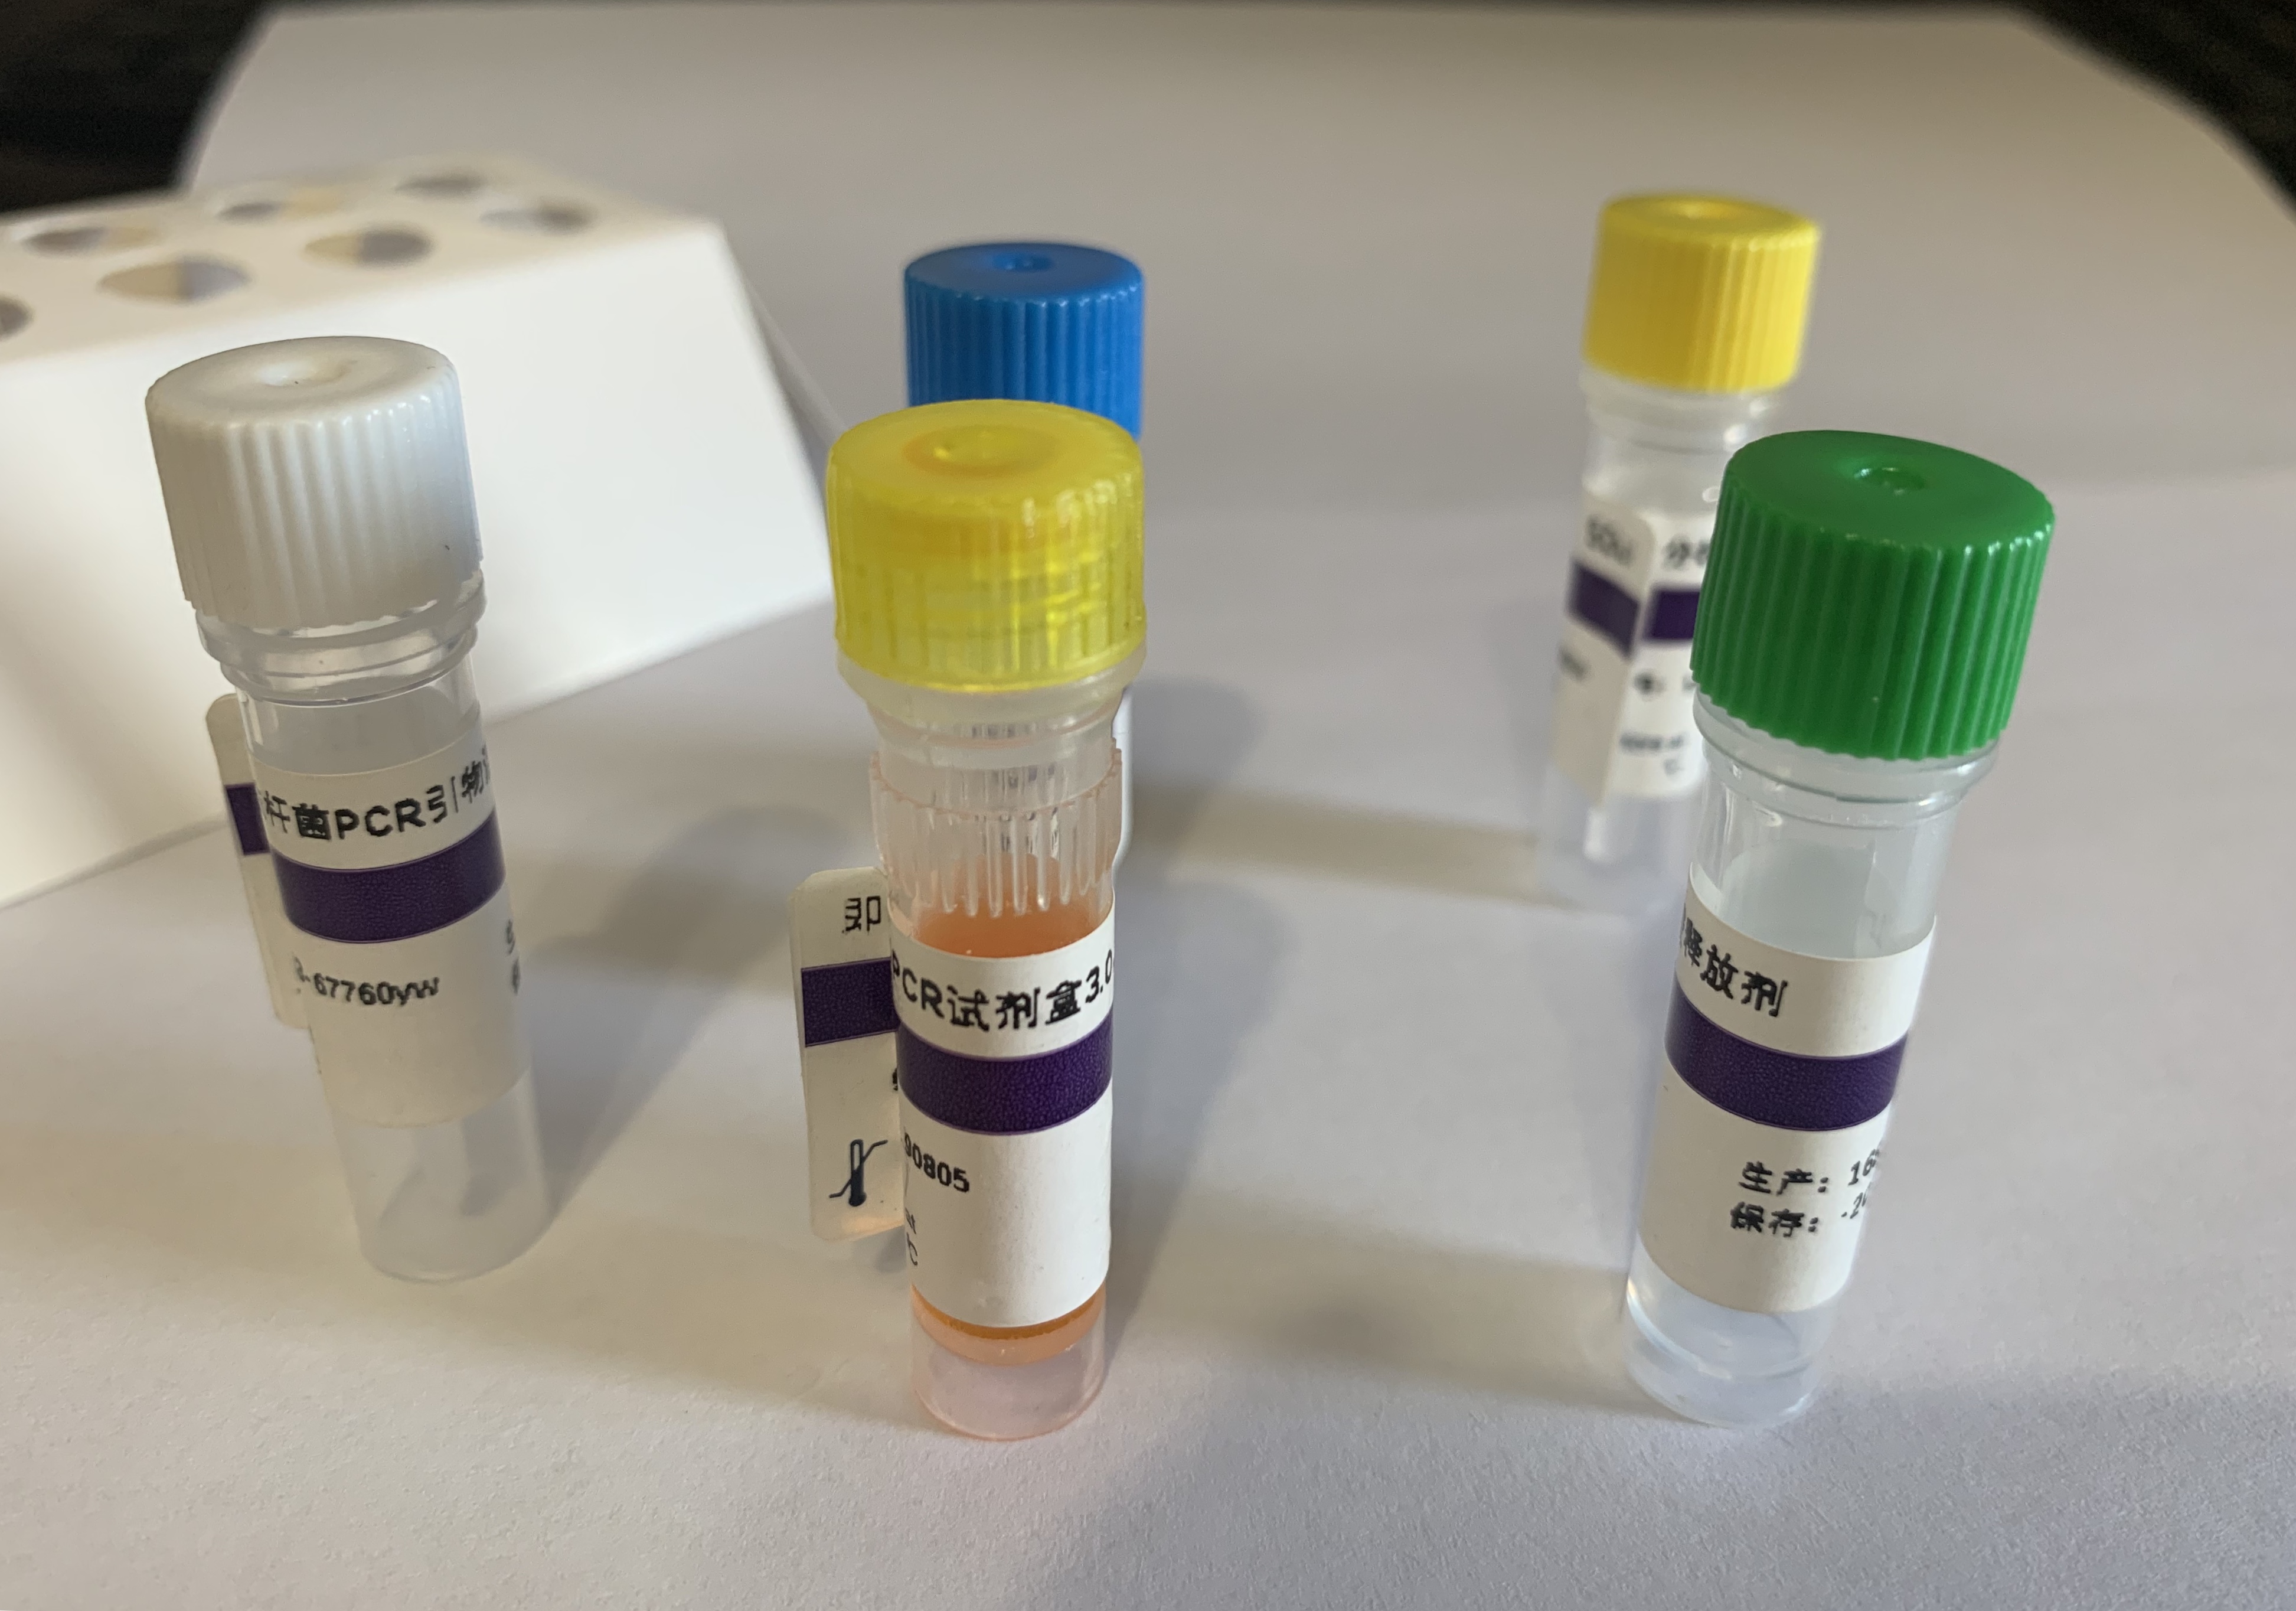 毛样枝孢霉探针法荧光定量PCR试剂盒